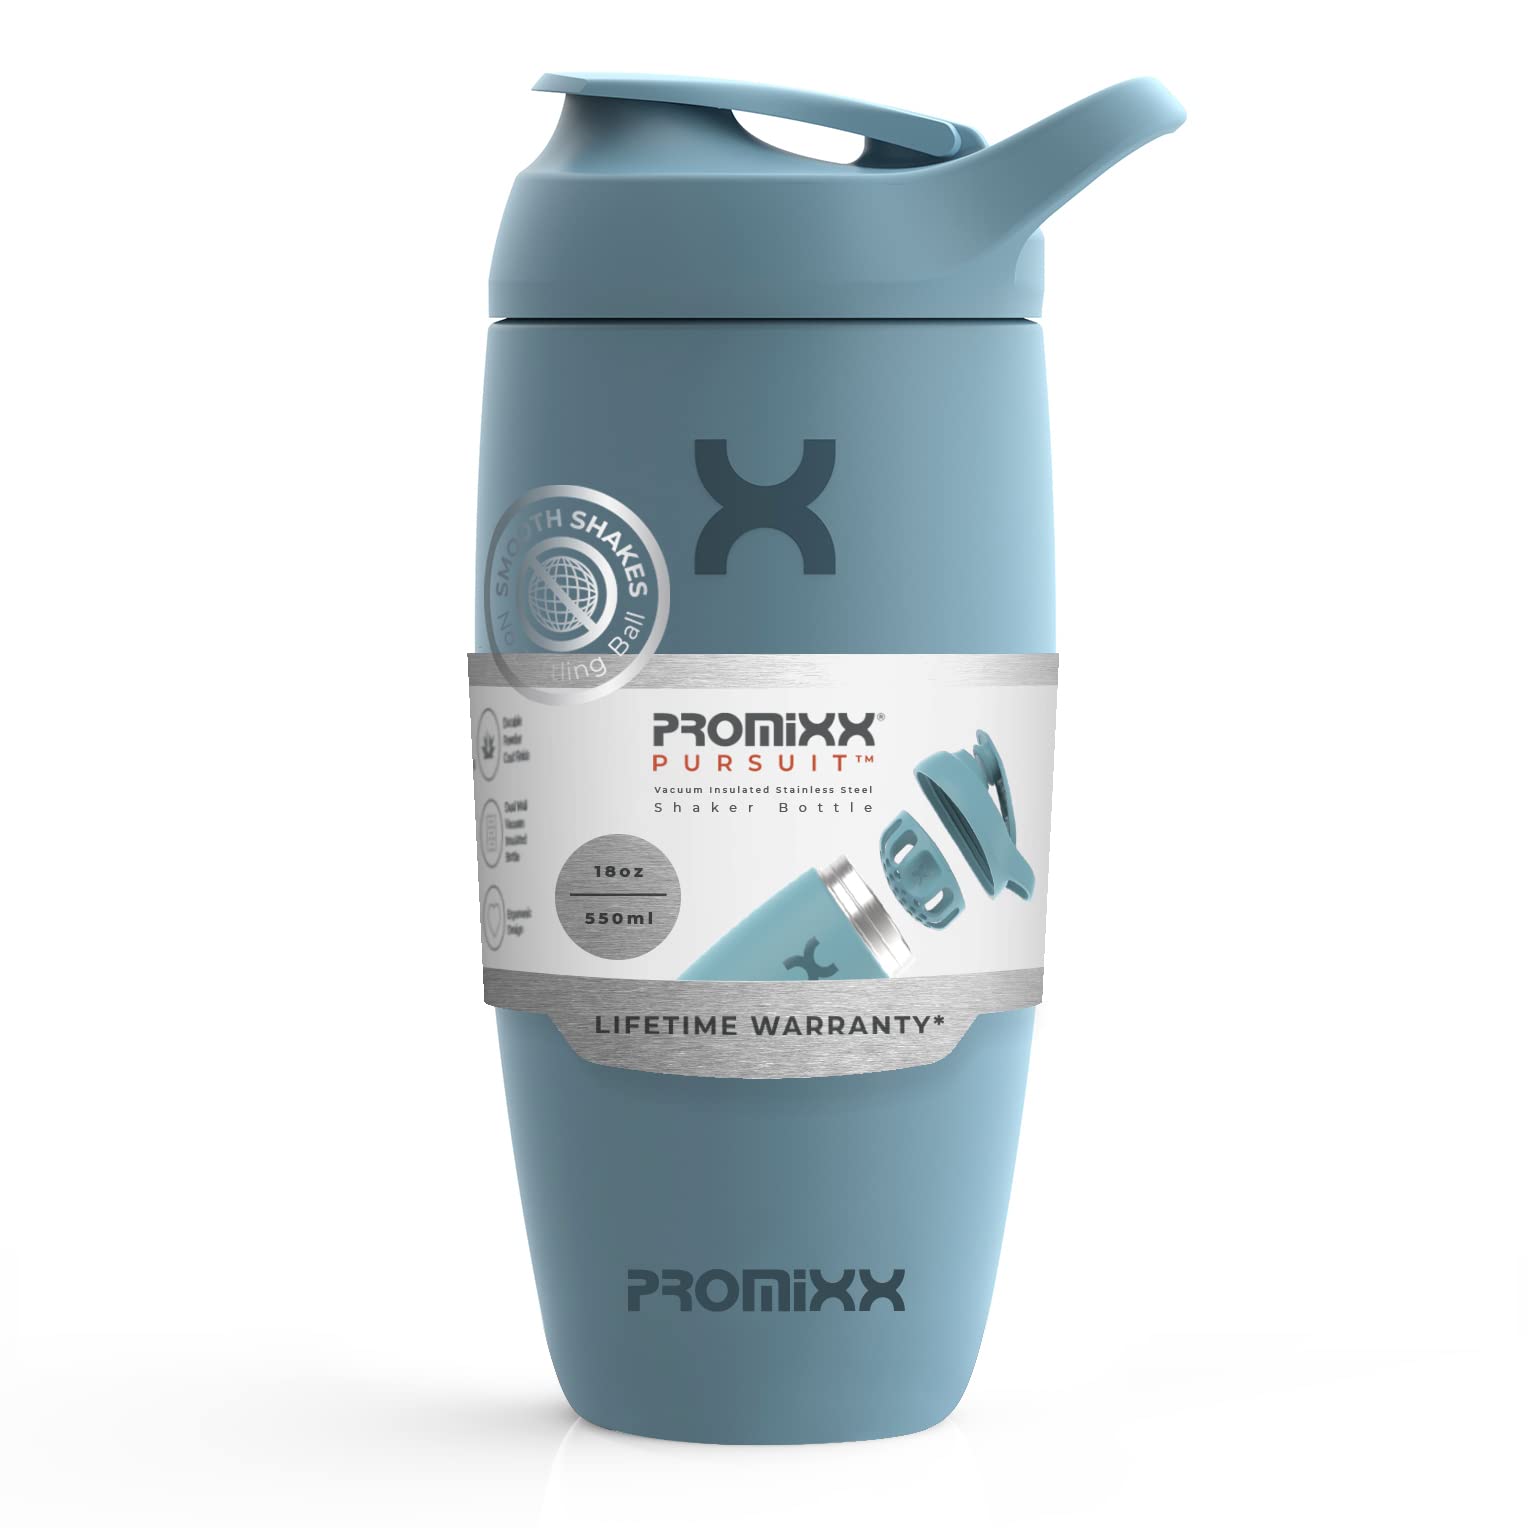 grand escompte Promixx Shaker – Bouteille shaker de protéines de qualité supérieure pour shakes complémentaires – (550 ml) – Gobelet en acier inoxydable facile à nettoyer (Bleu Océan Calme) y6BQKsxOp stylé 